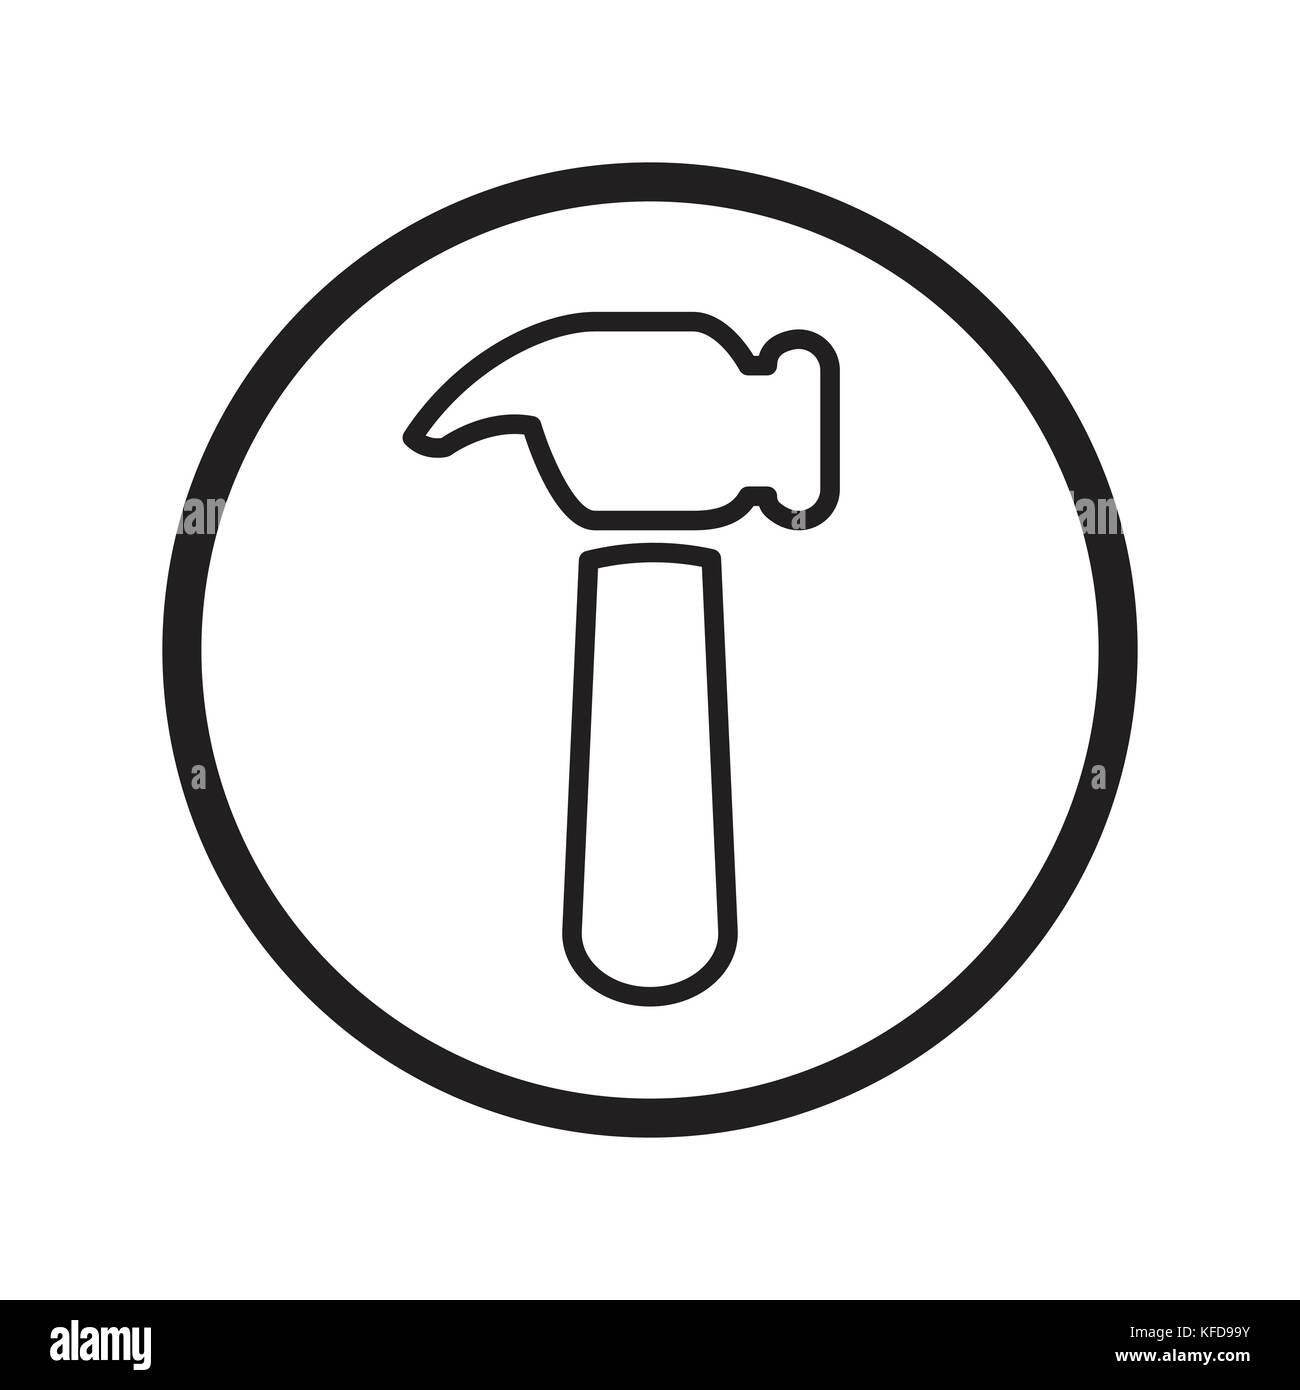 Lineare icona martello, fix tools simbolo iconico all'interno di un cerchio, su sfondo bianco. vettore design iconico. Illustrazione Vettoriale